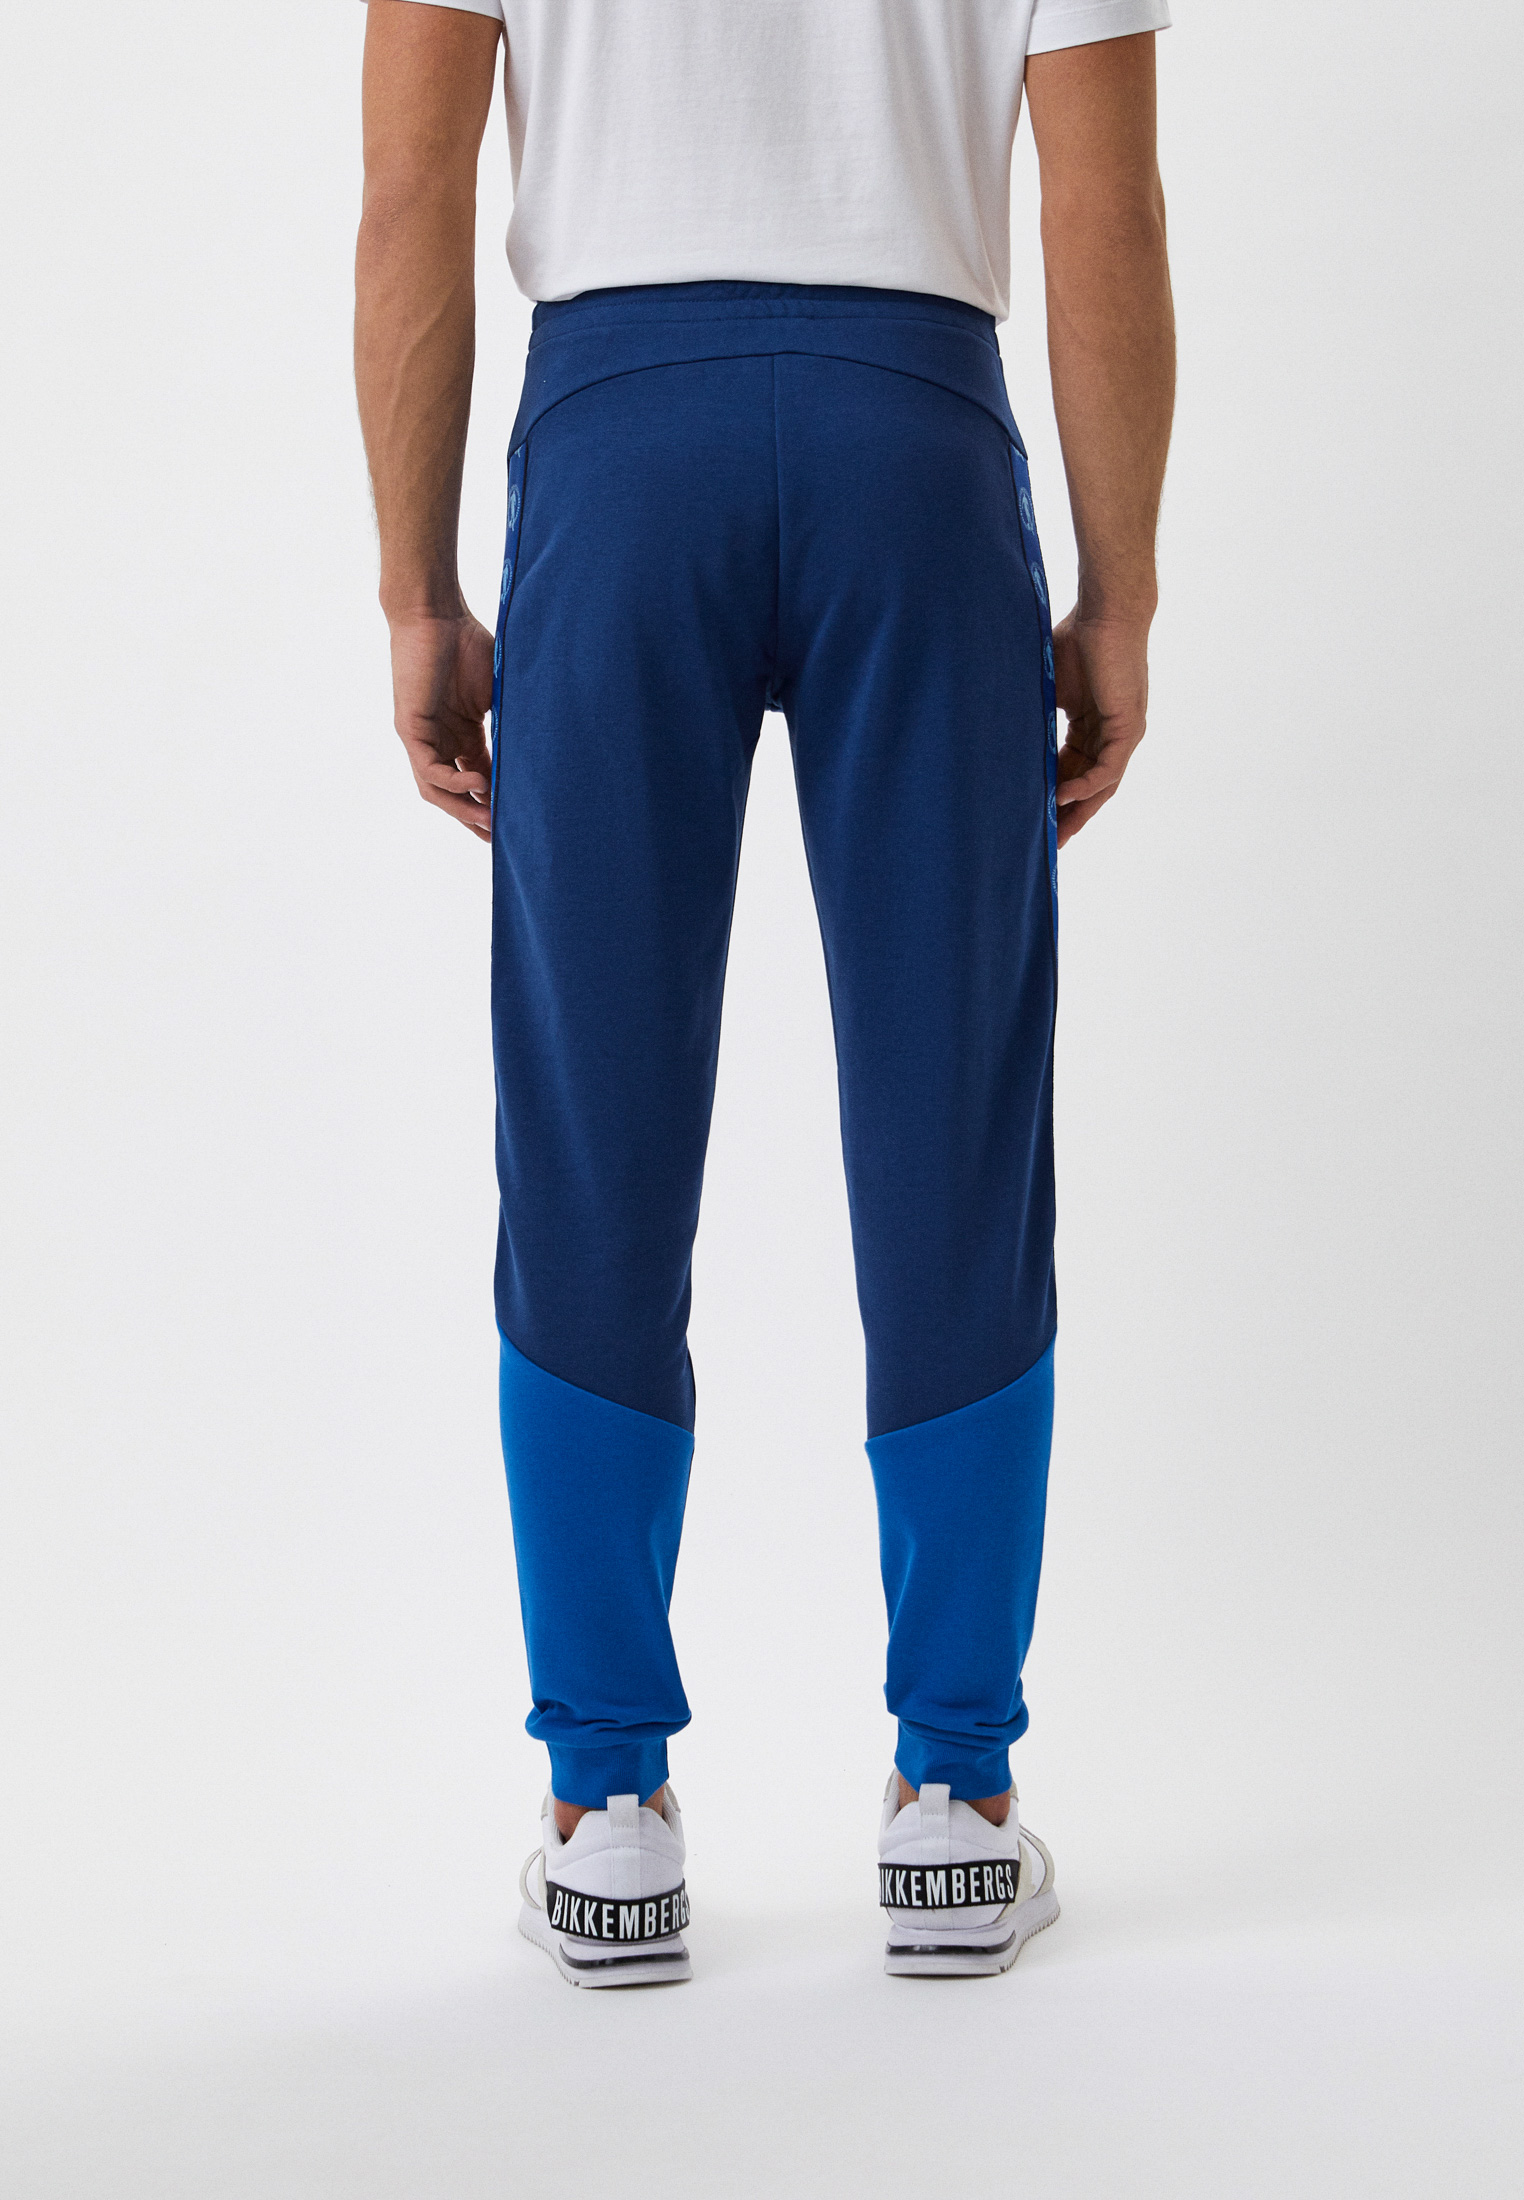 Мужские спортивные брюки Bikkembergs (Биккембергс) C 1 257 80 M 4382: изображение 3